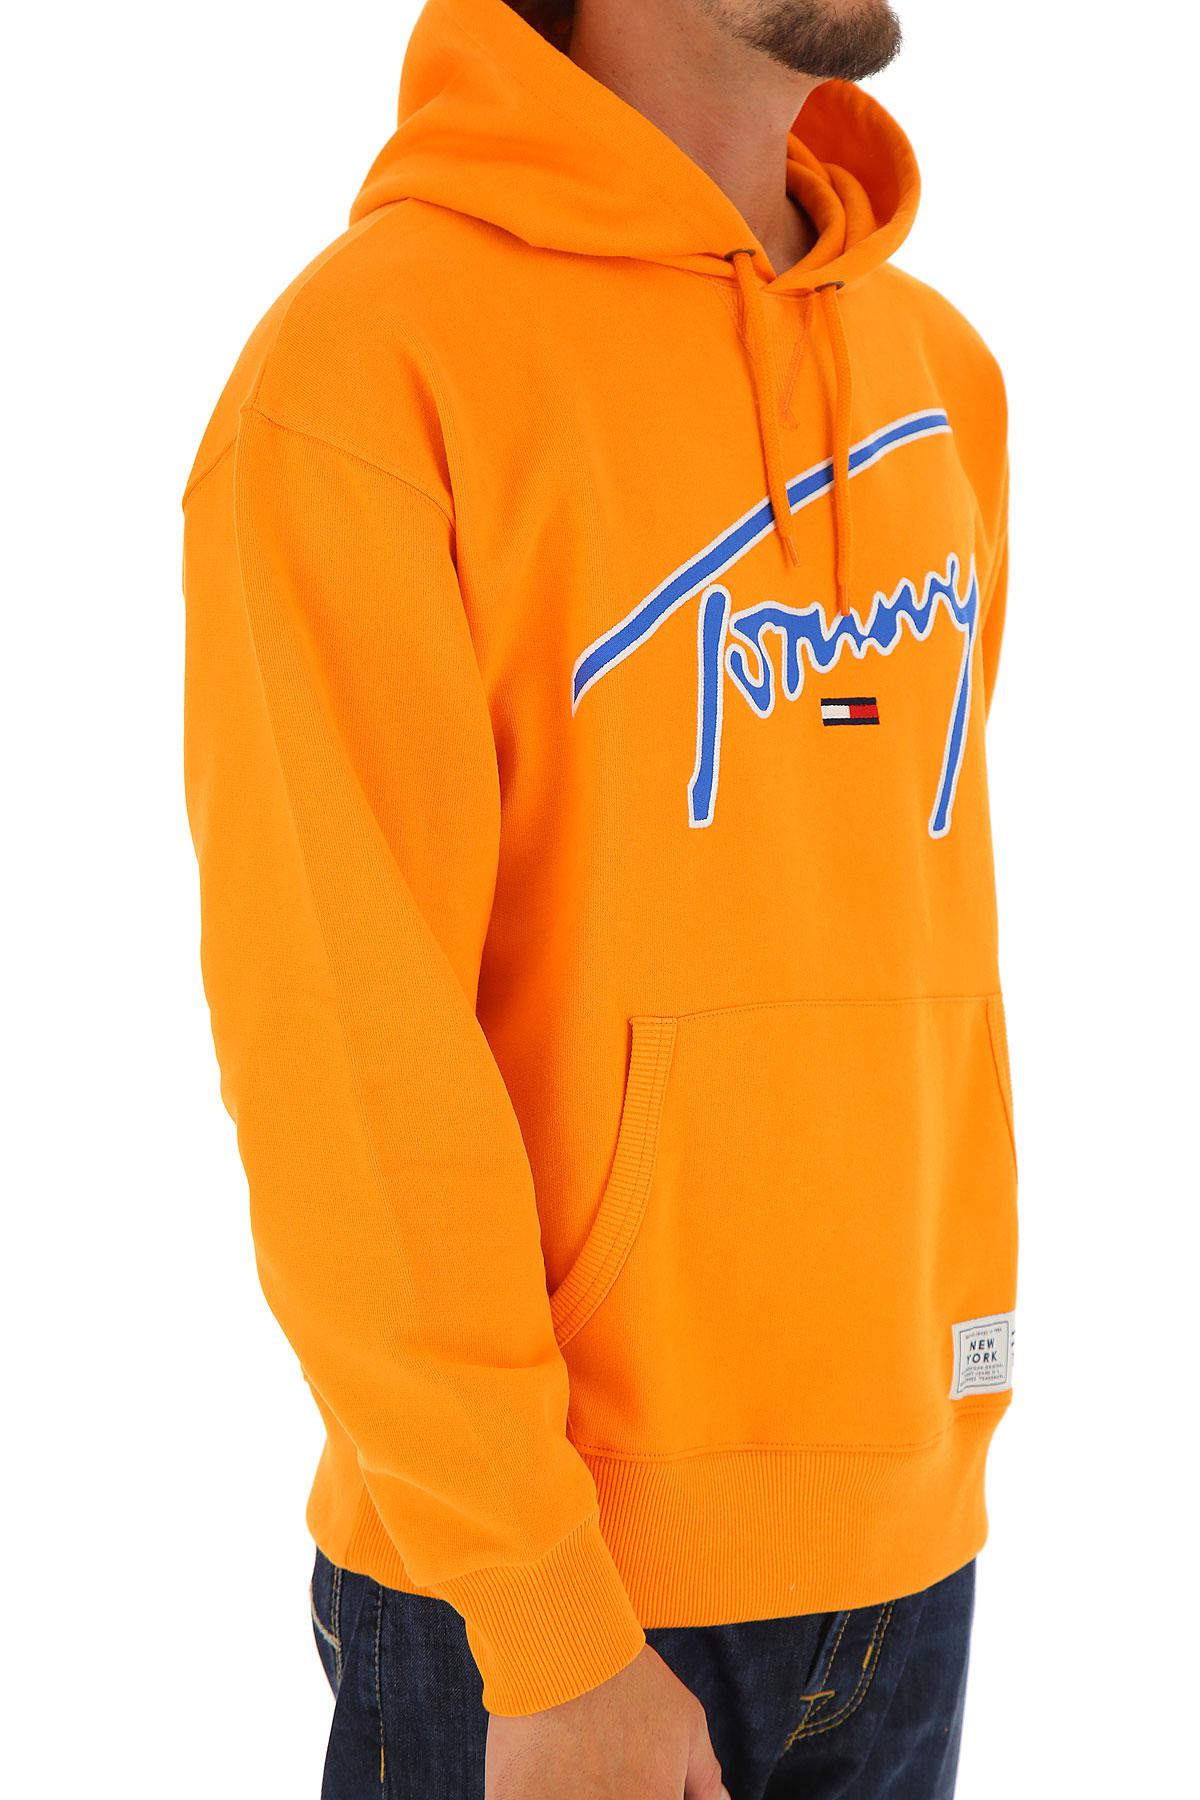 tommy orange hoodie